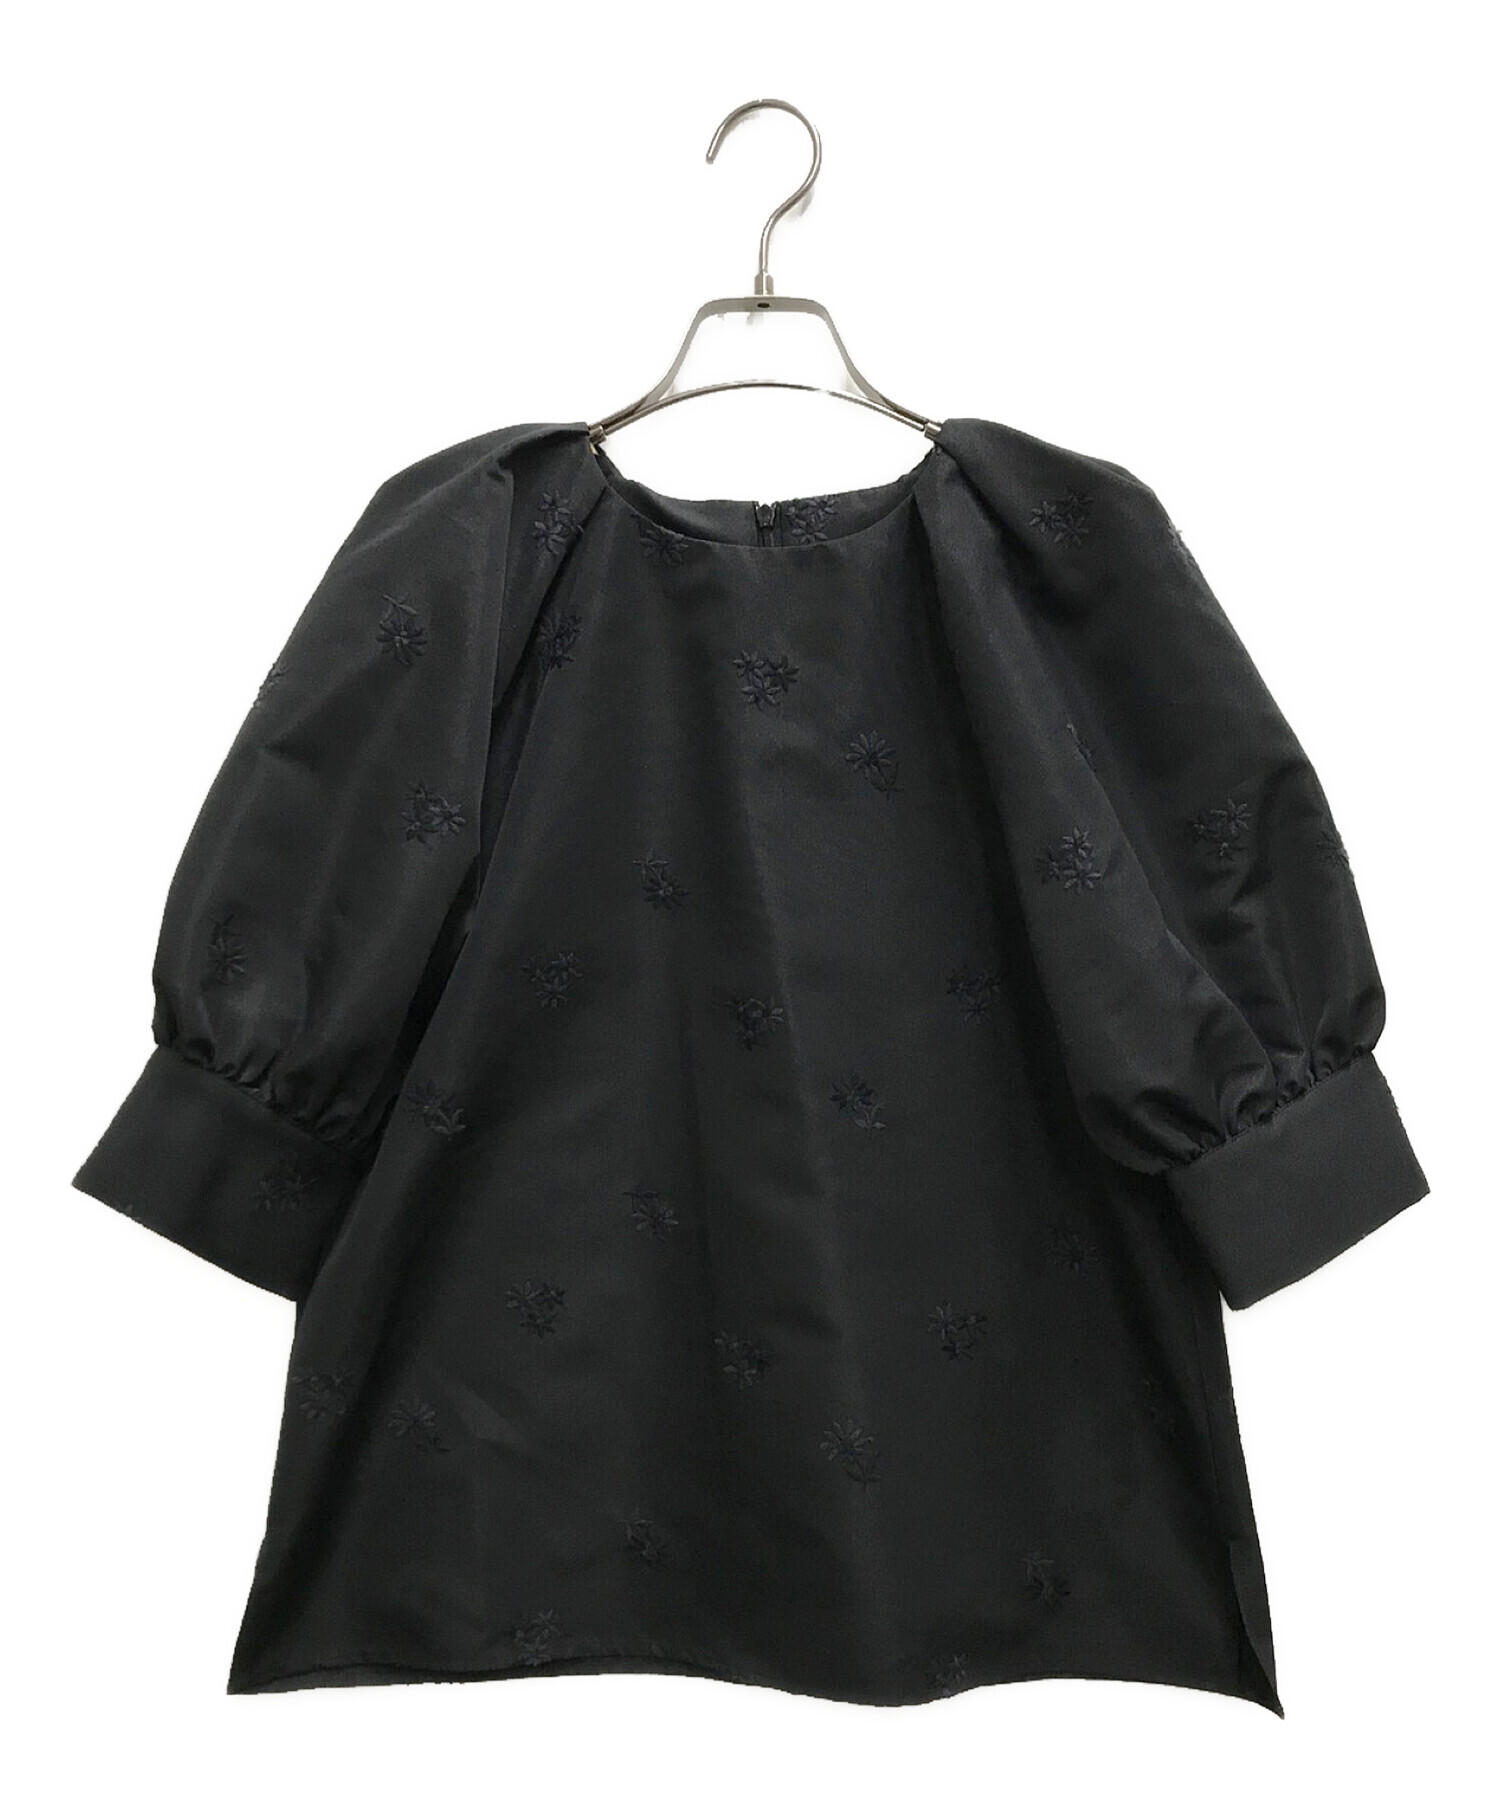 中古・古着通販】Bluelea (ブルレア) original embroidery blouse